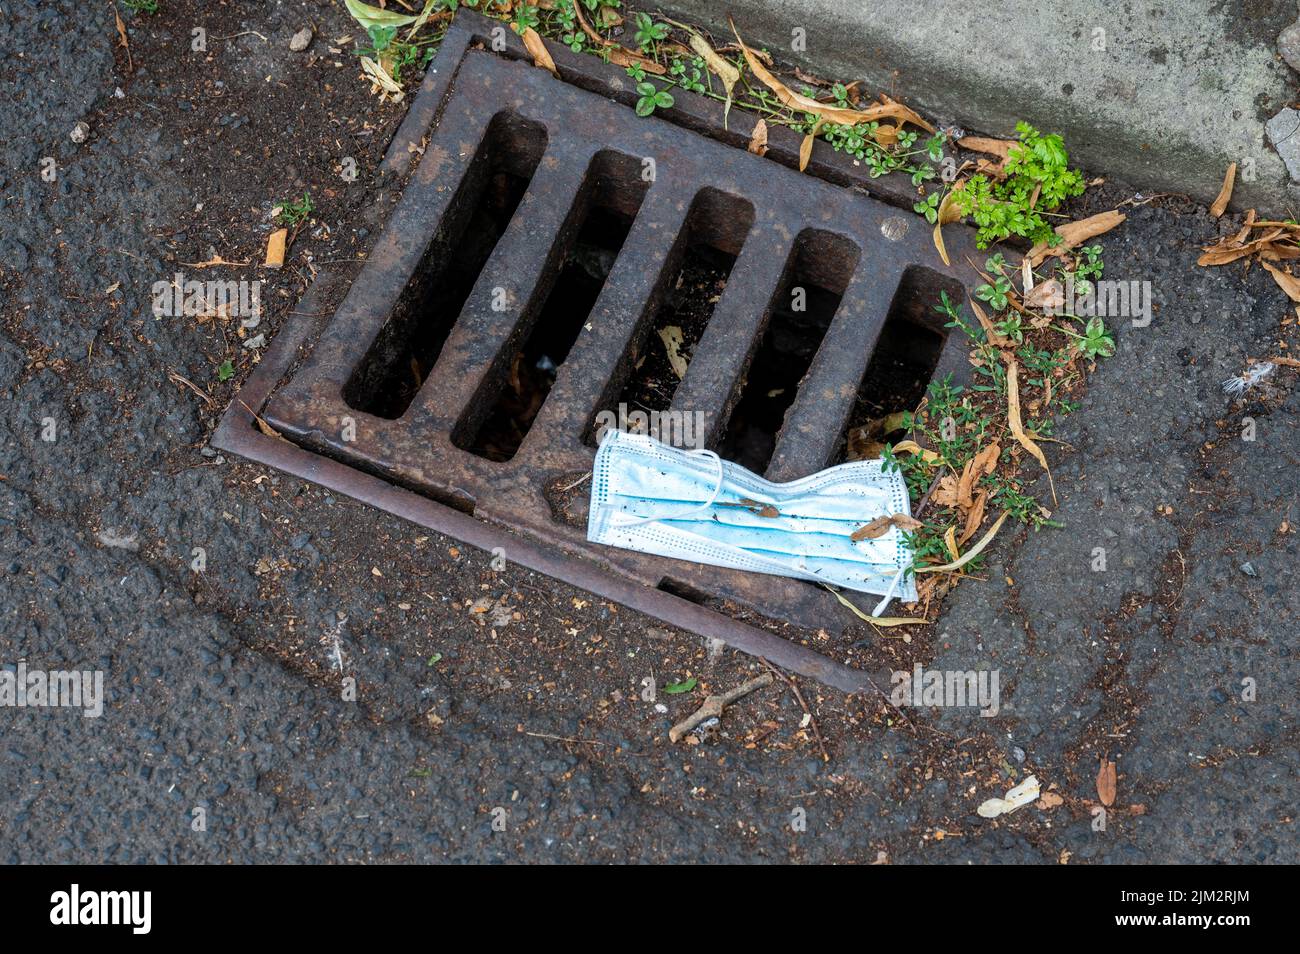 Le masque facial jeté sur un drain de la rue peu de temps après que la nouvelle du projet oiseaux et débris a été publiée. Banque D'Images